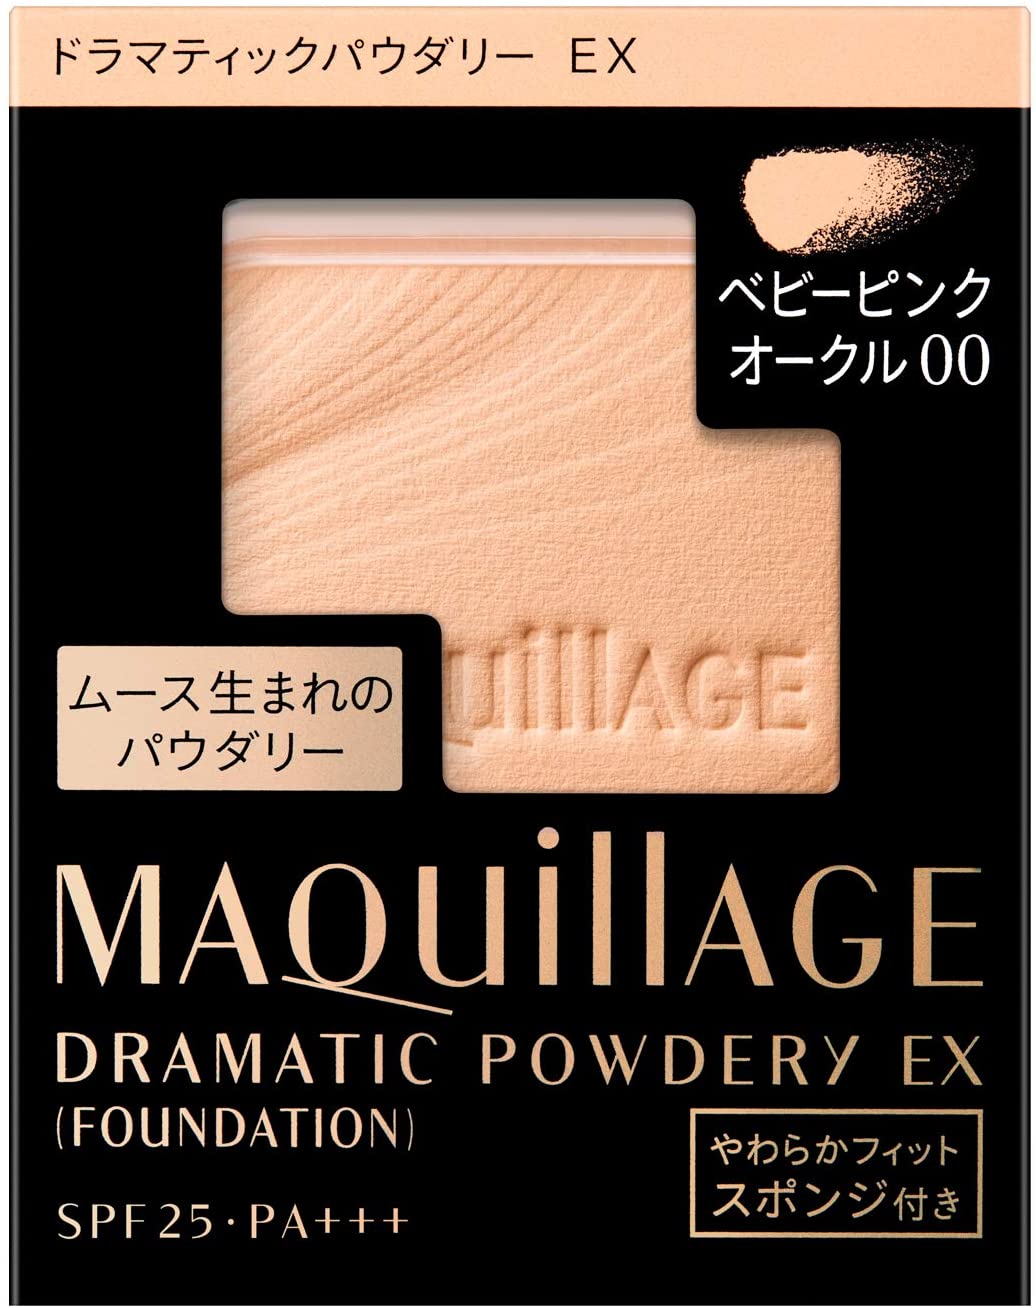 Maquillage Dramatic Powdery EX - Ichiban Mart